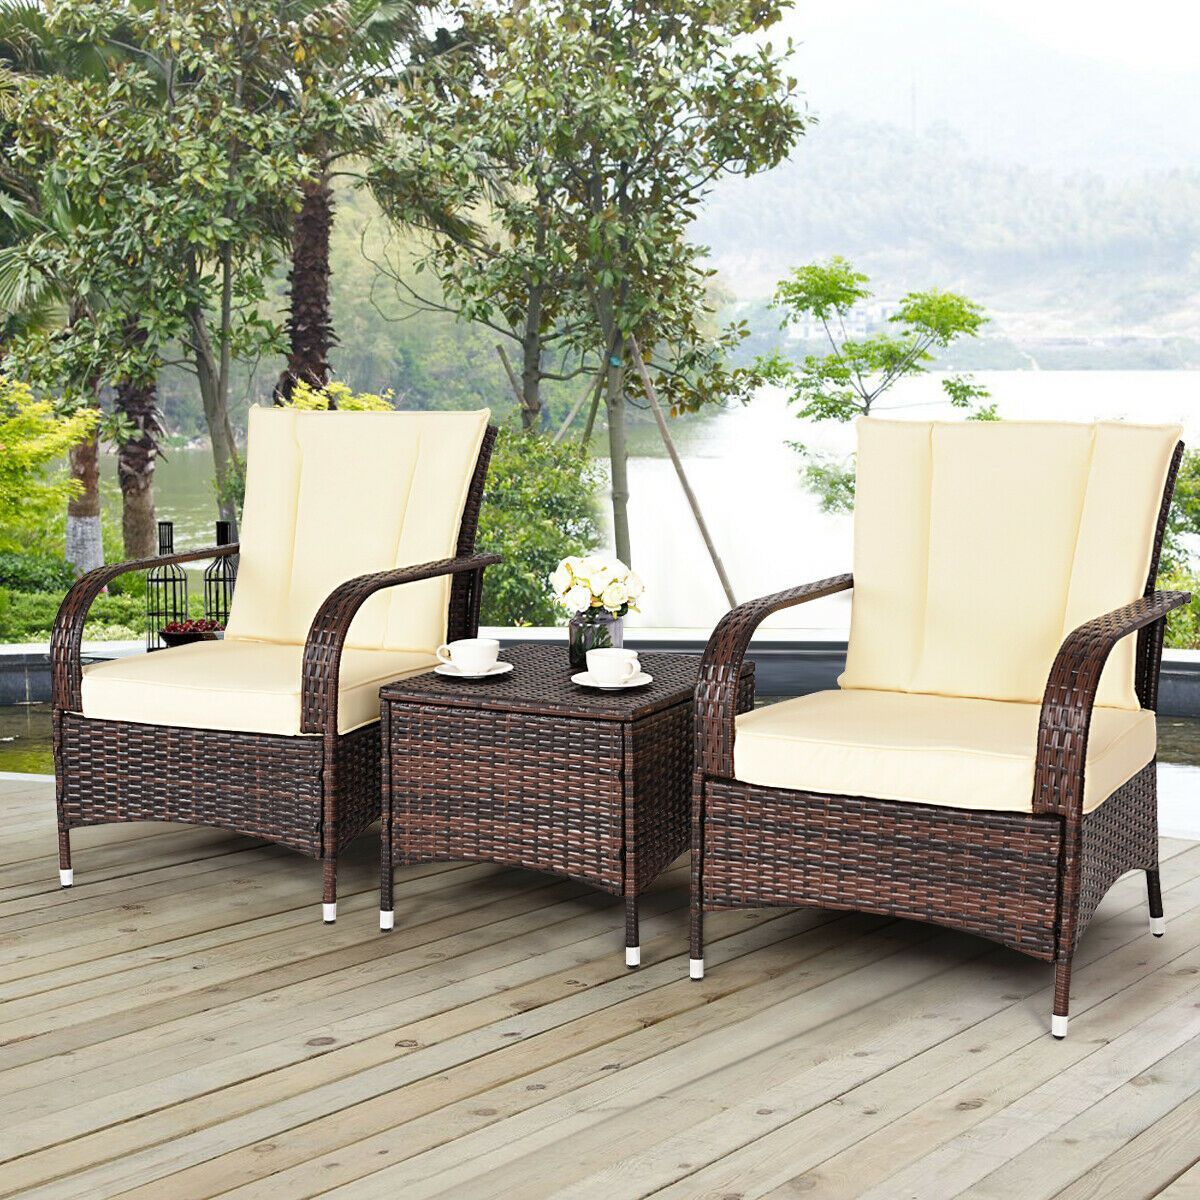 Costway 3PCS Outdoor Patio Rattan Wicker Furniture Set